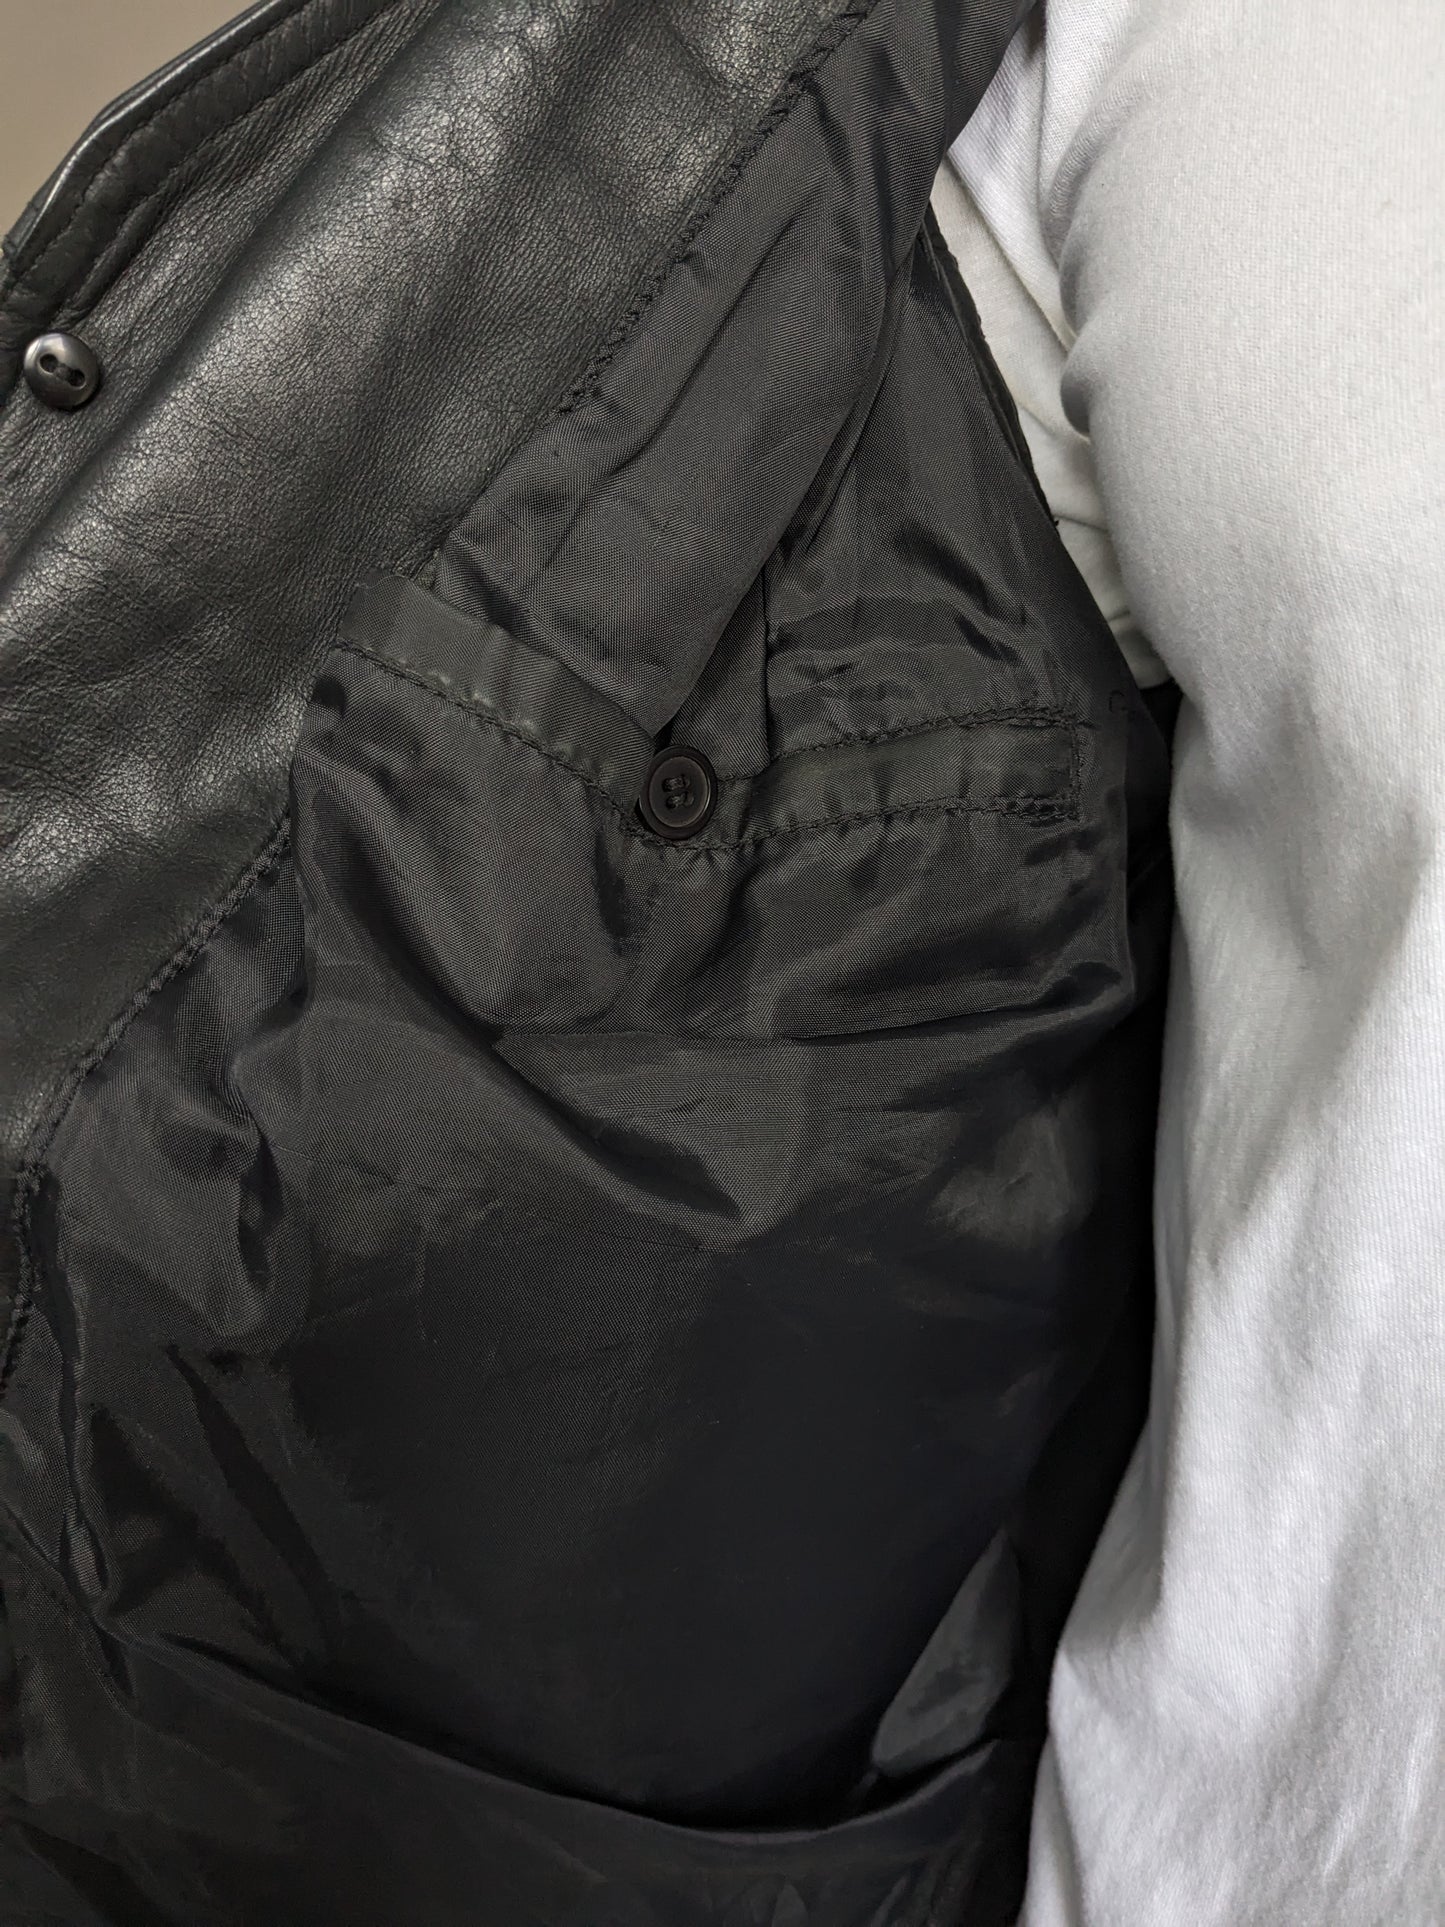 B Opción: chaleco de cuero de doble llagelación vintage con 3 bolsillos internos. Negro. Tamaño L. Mist 1 Knoop.